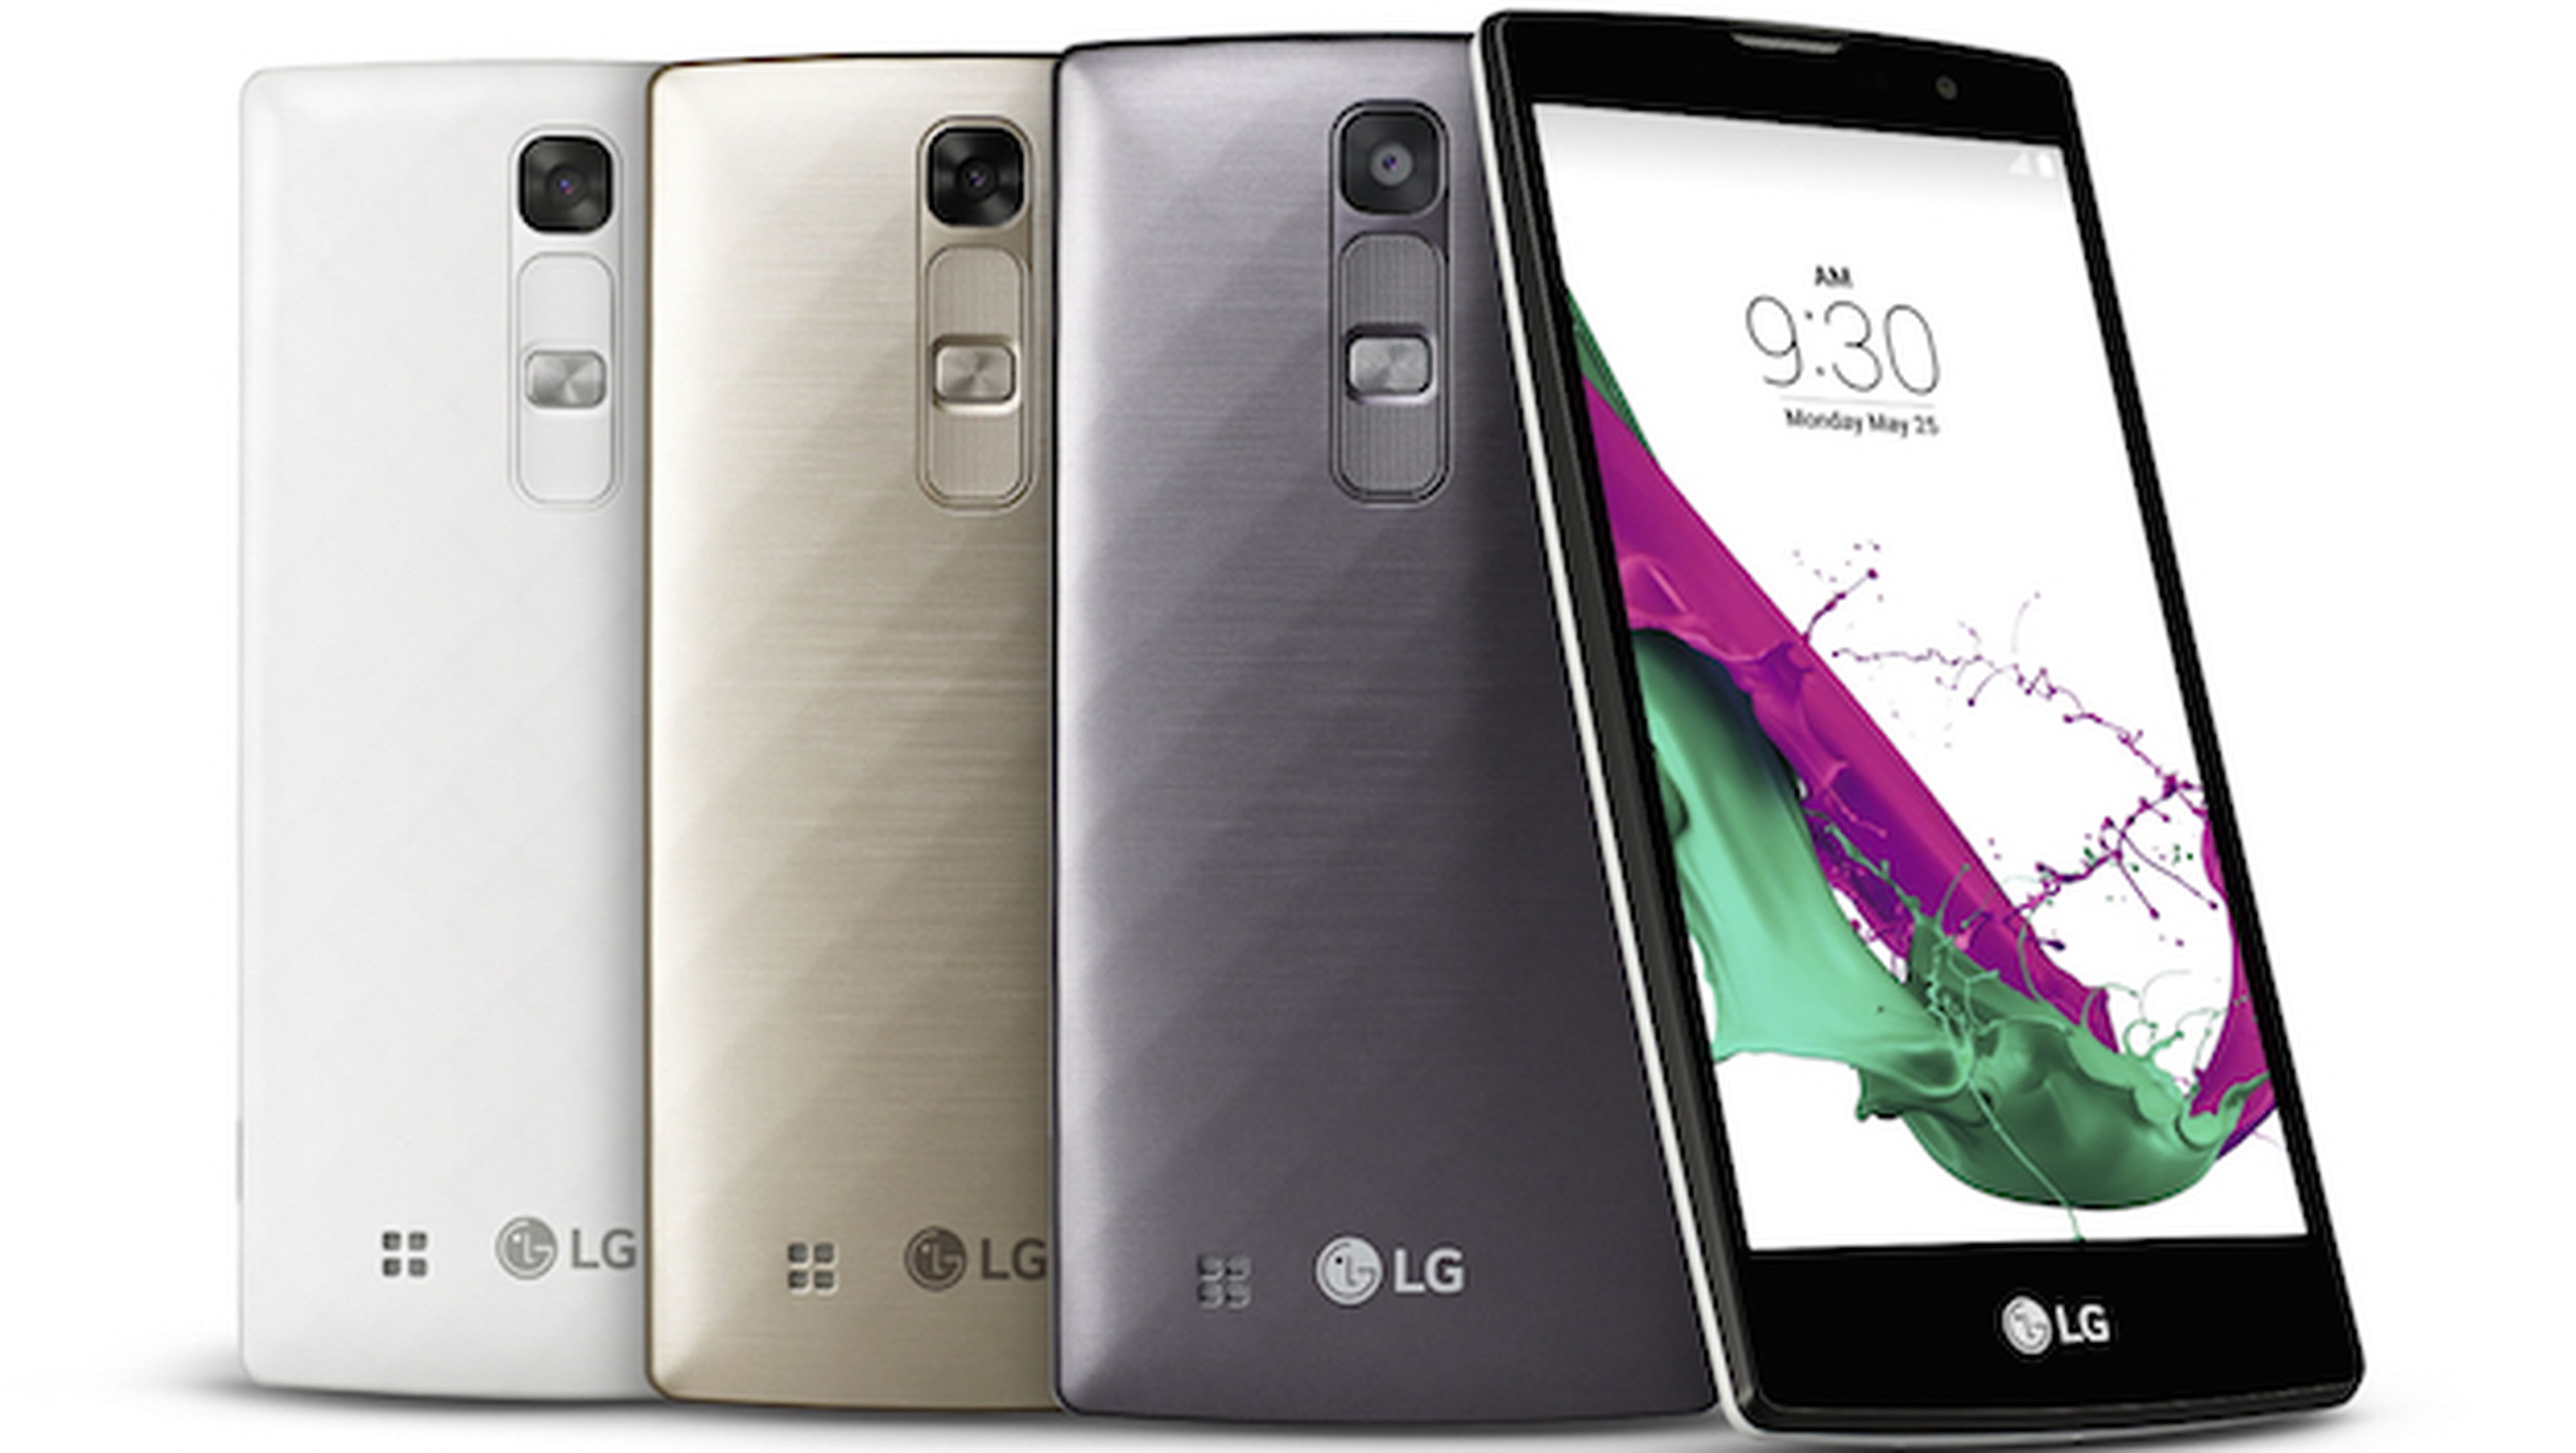 LG G4 Stylus y LG G4c: presentados los nuevos smartphones de LG